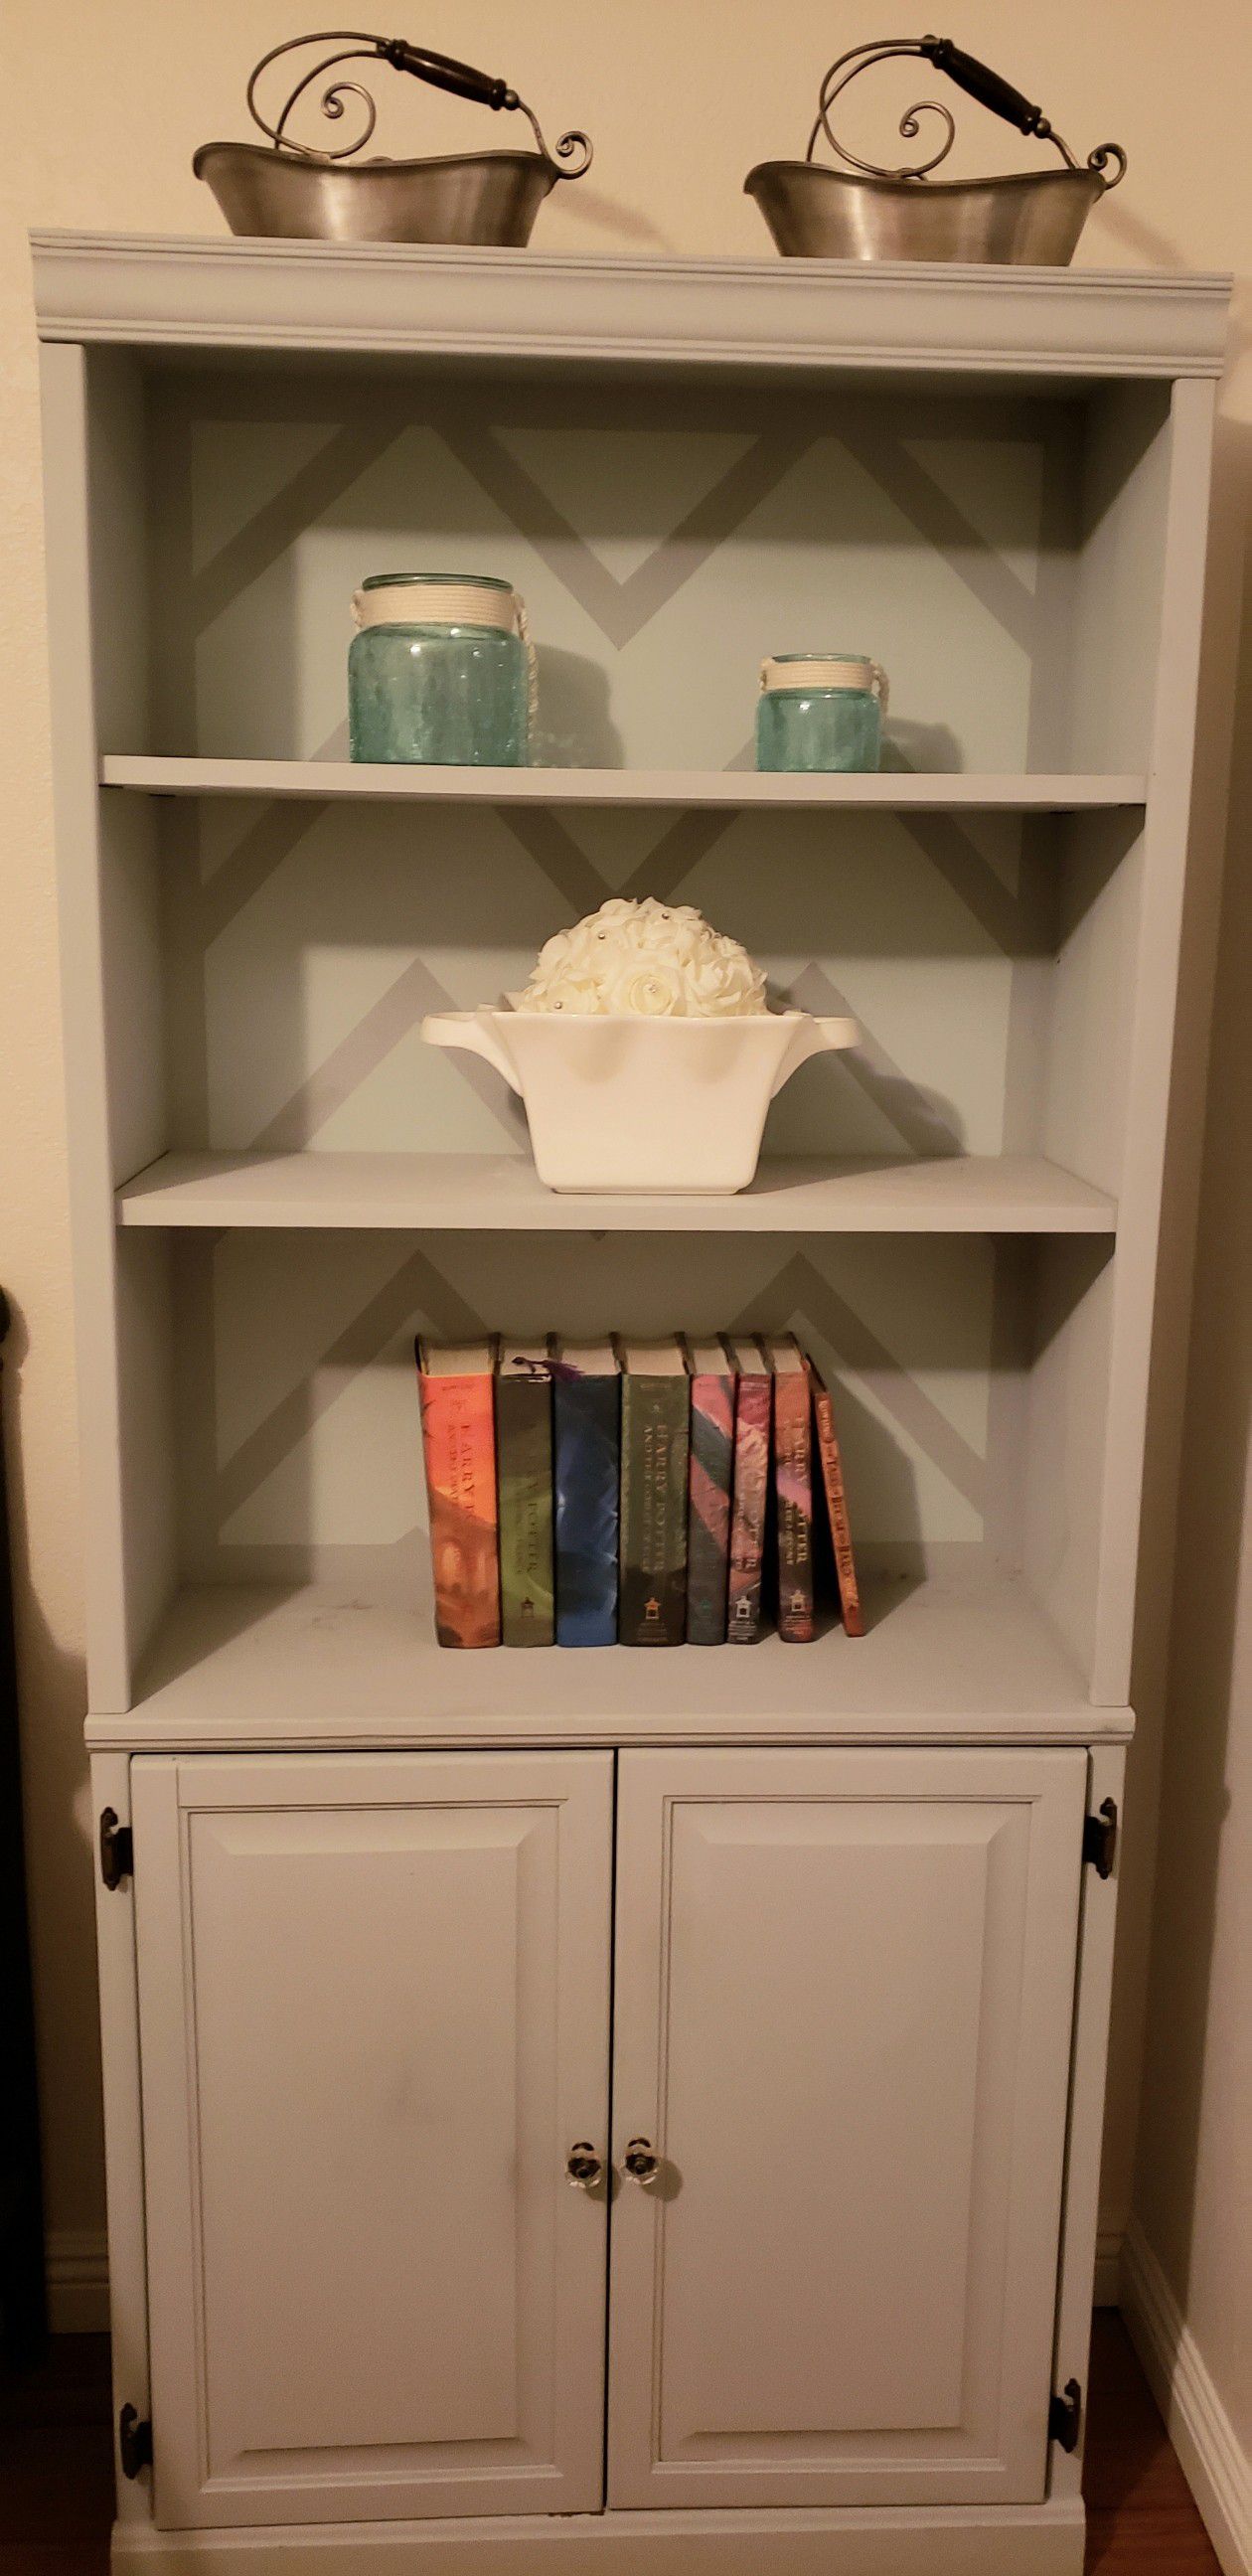 book shelf with storage 72"h x 32" w x 12" d